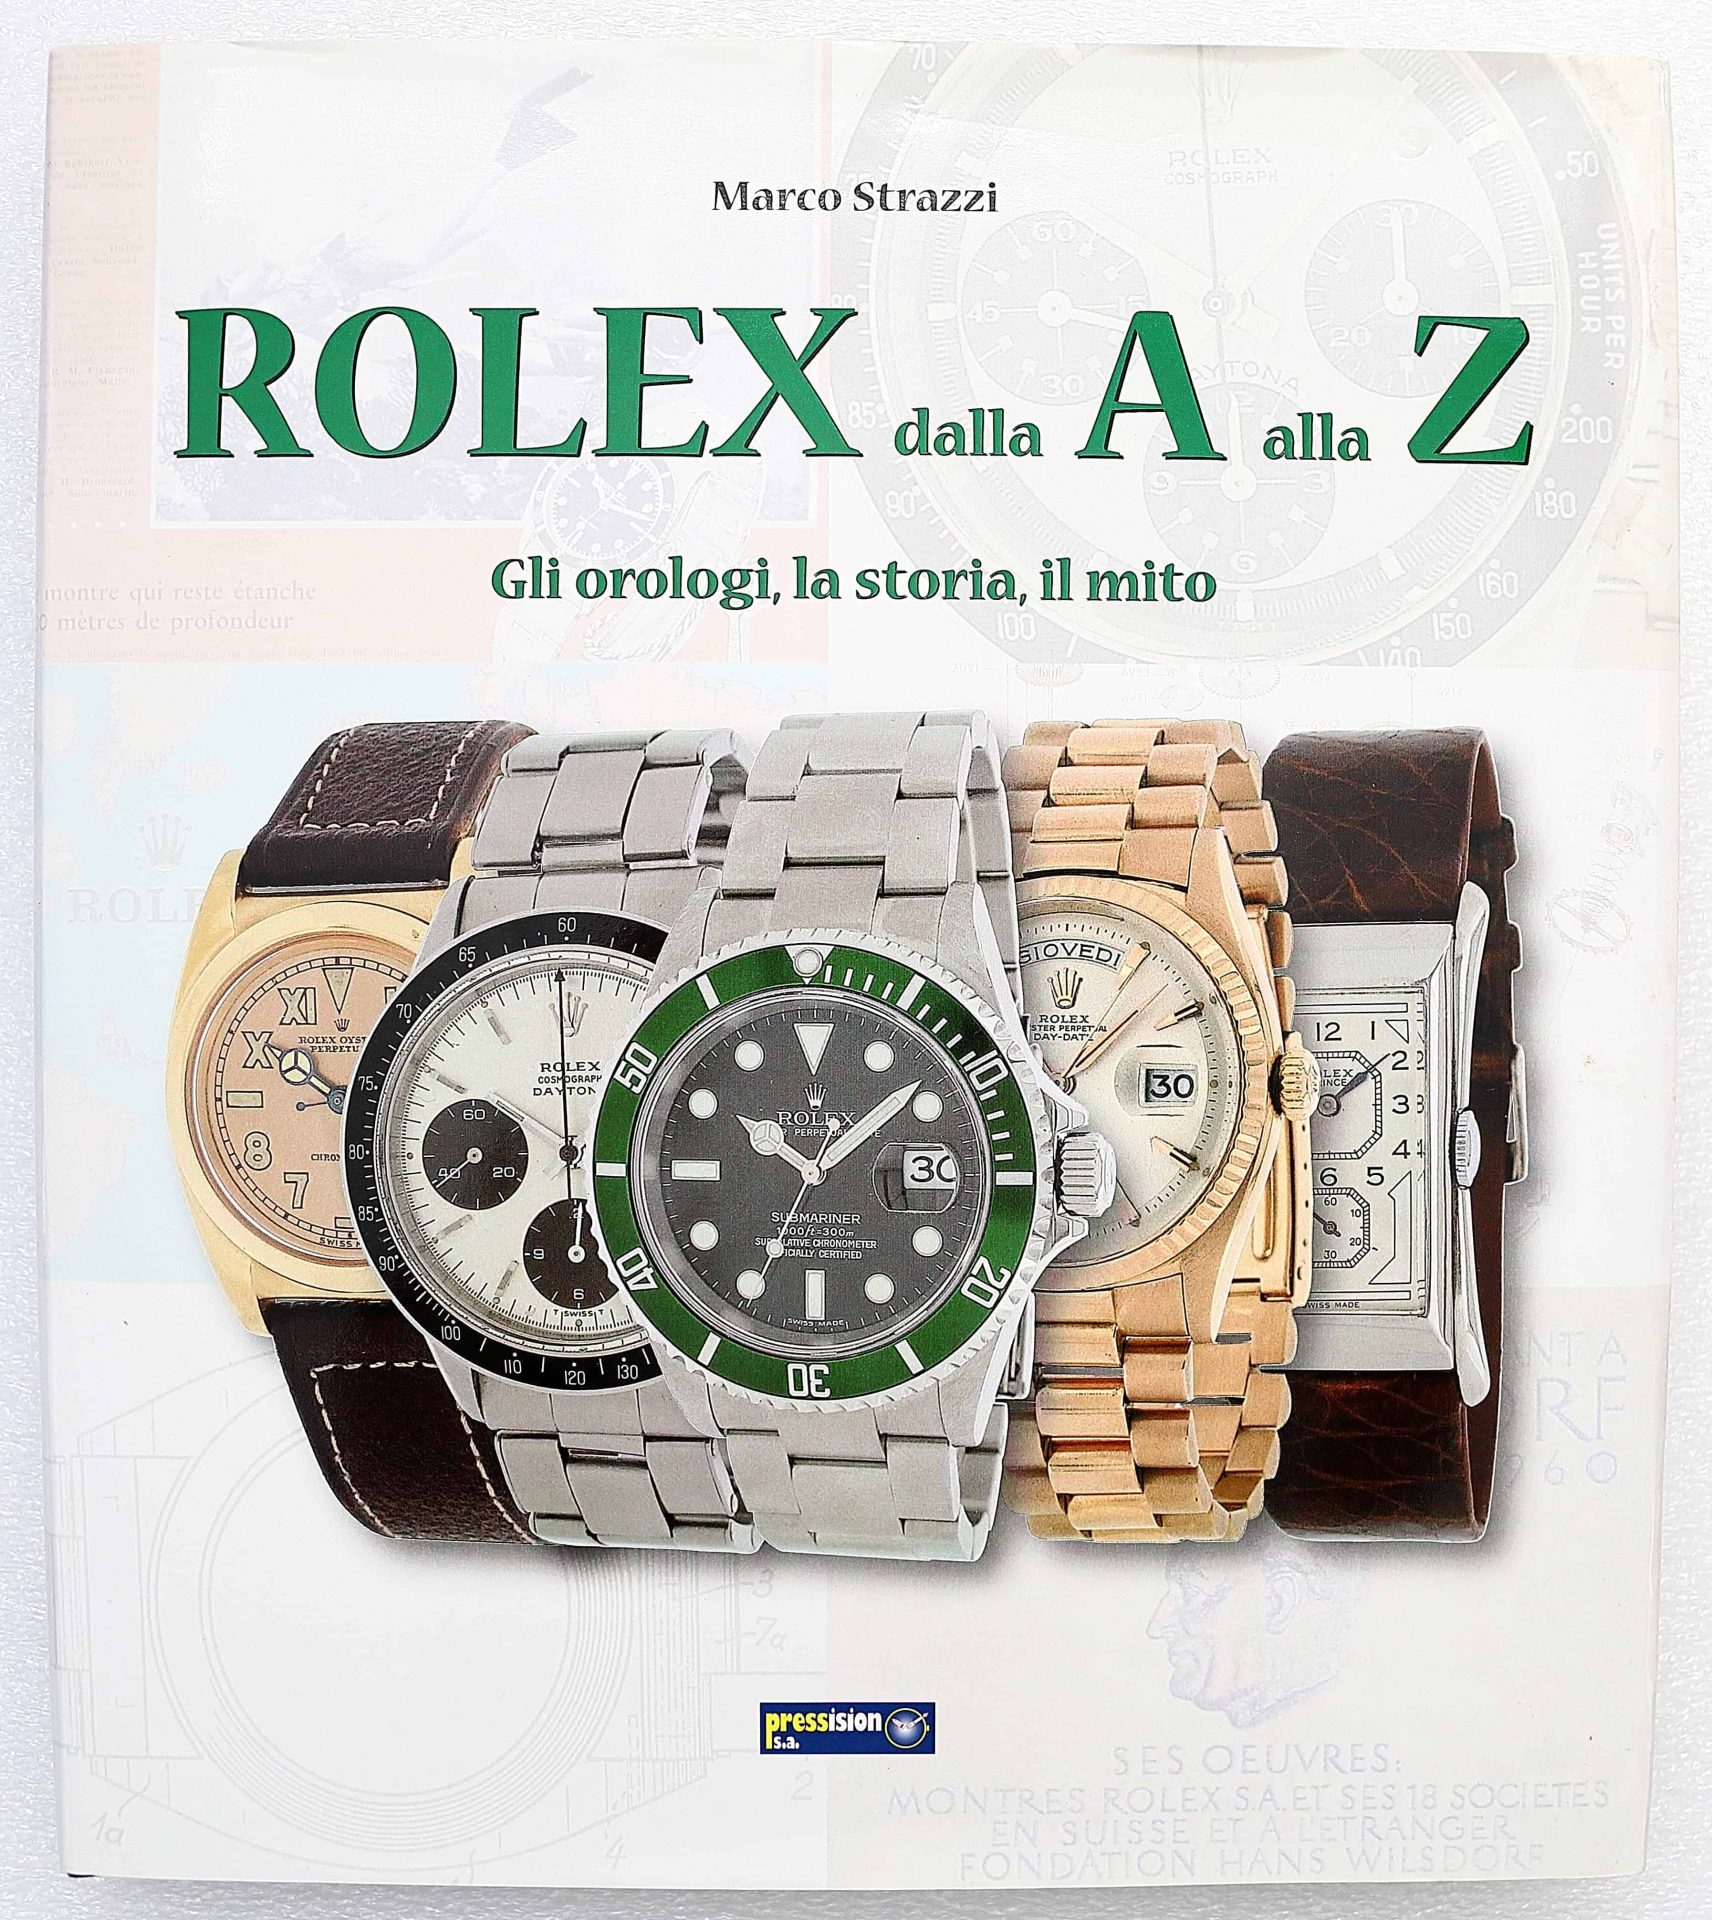 12103 Rolex dalla A alla Z Book by Marco Strazzi - Rare Watch Parts